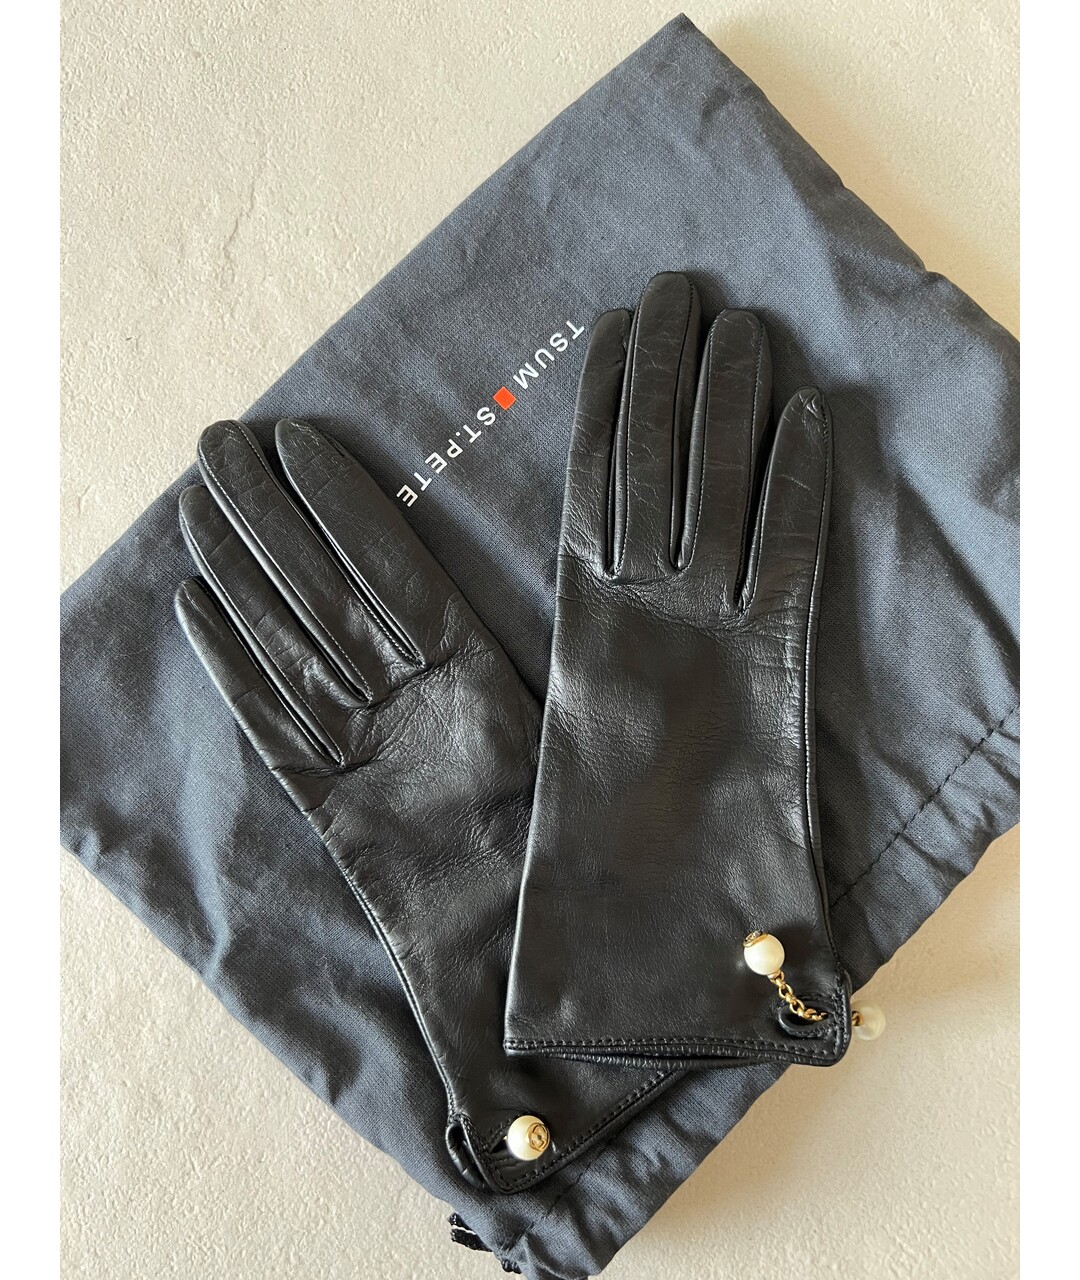 GUCCI Черные кожаные перчатки, фото 2